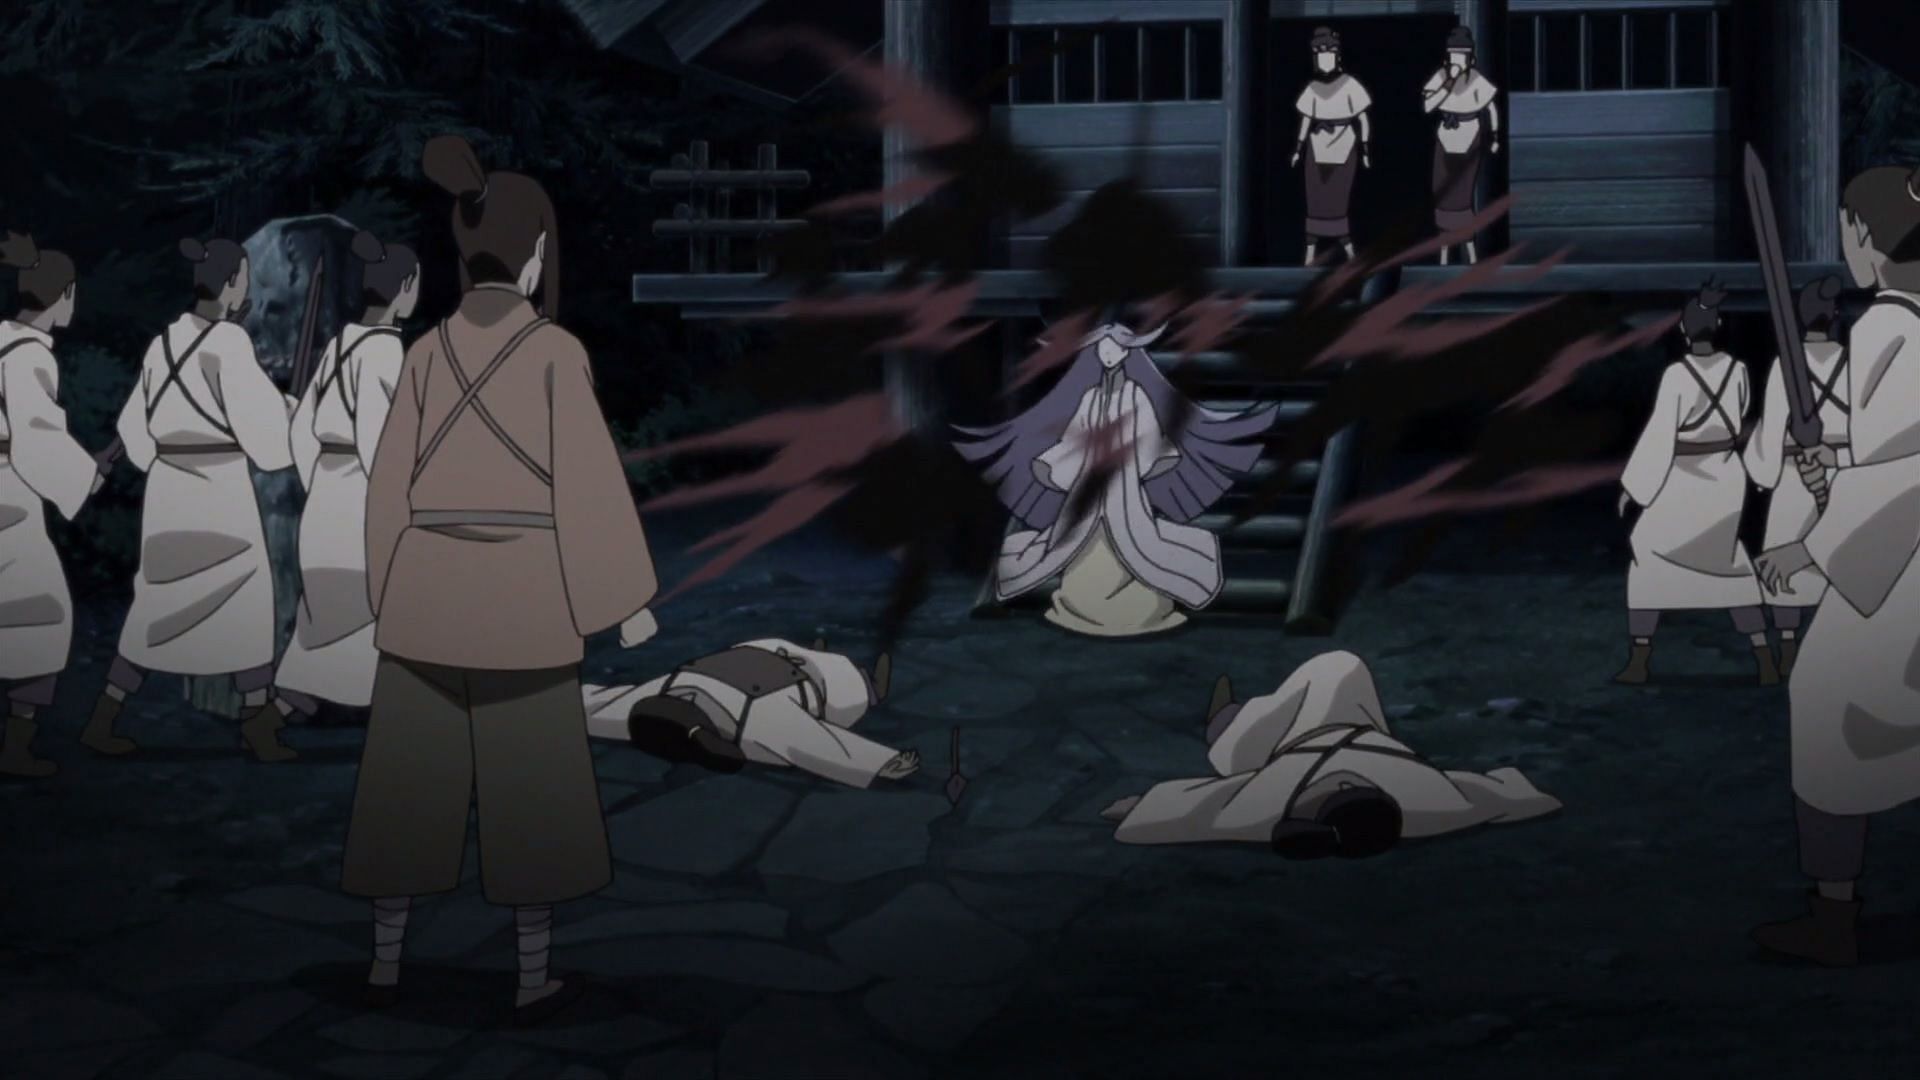 Kaguya uses her power to defend herself (image via Masashi Kishimoto/Shueisha, Viz, Naruto)